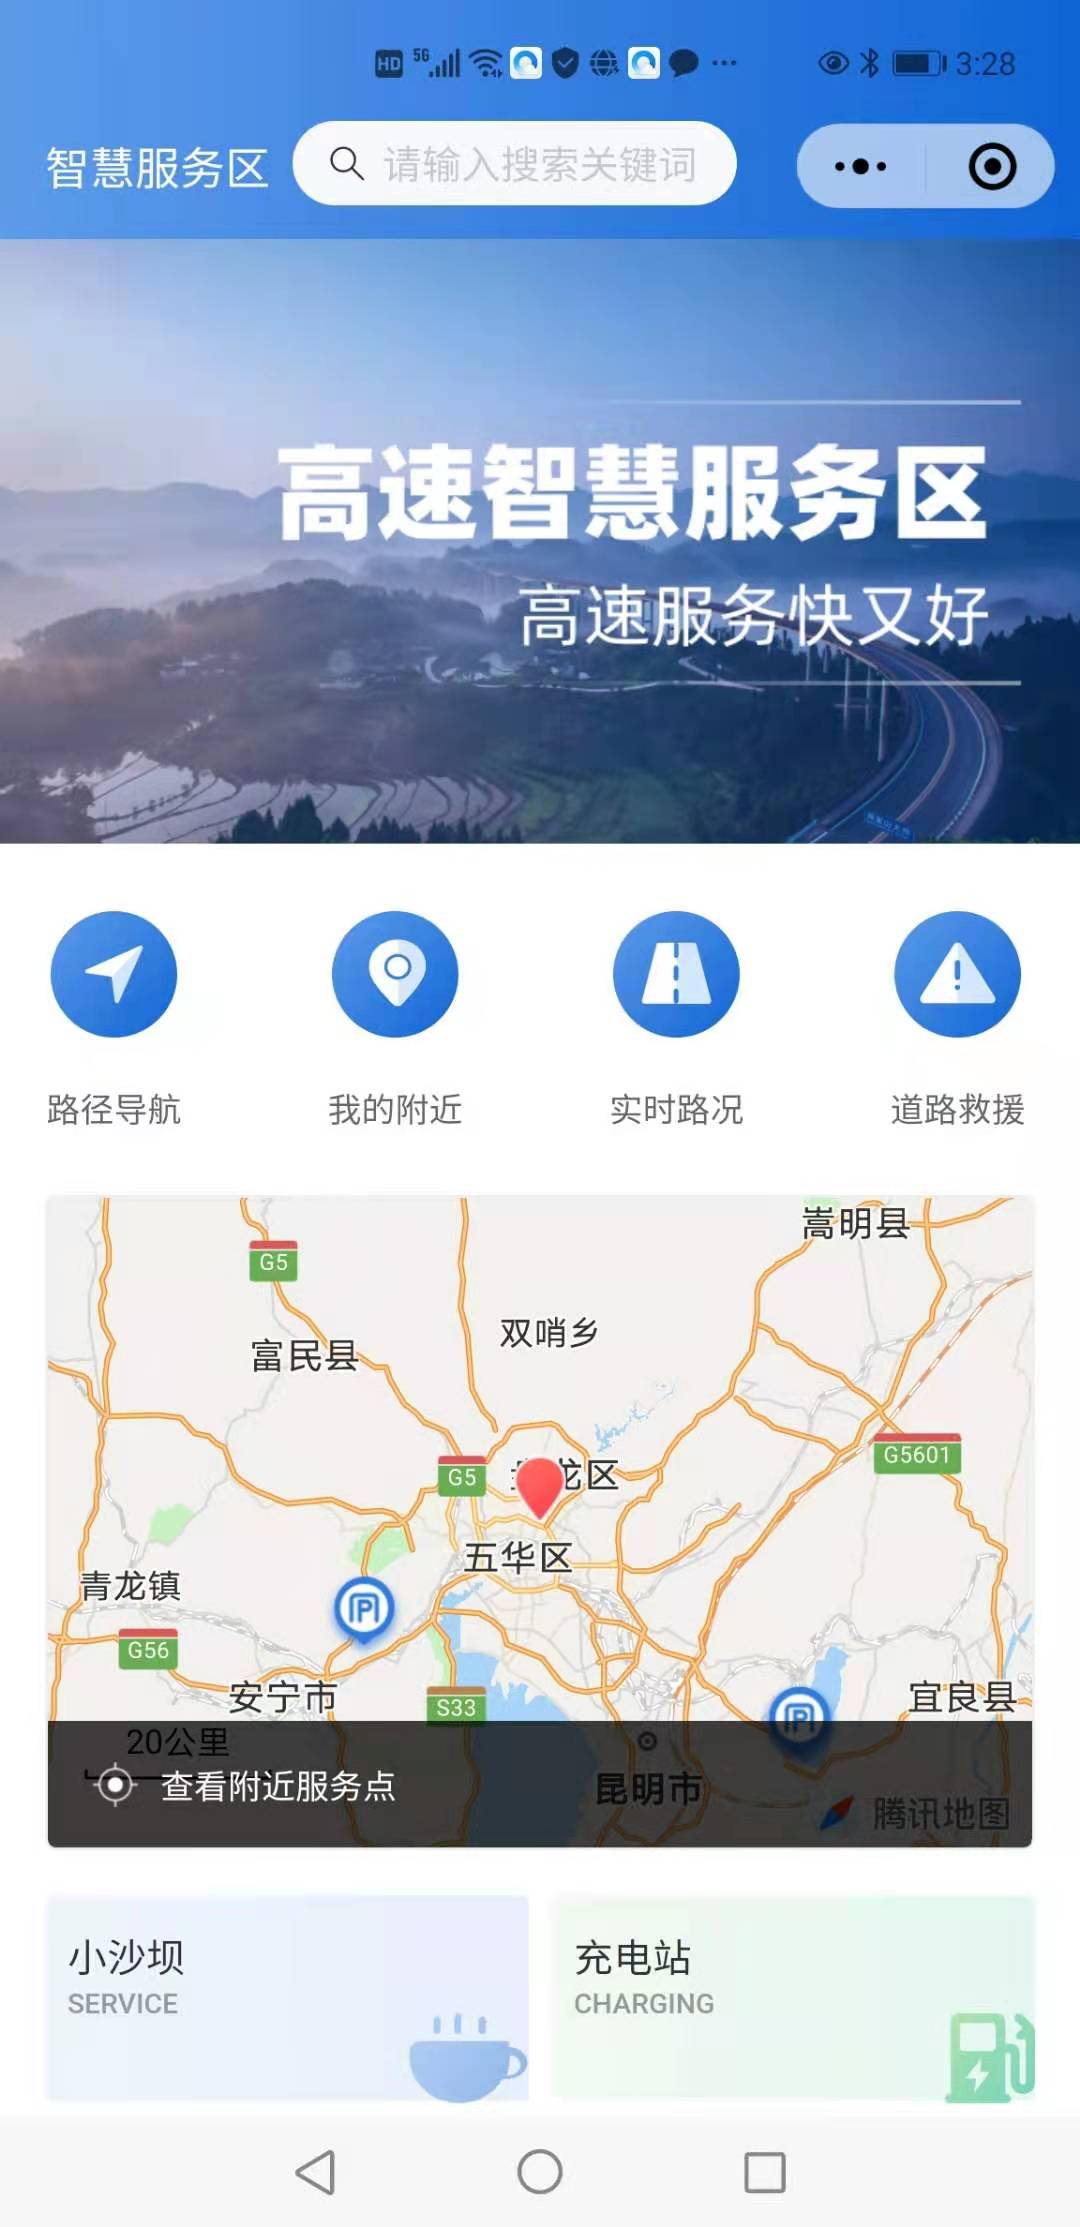 可查询实时路况,在线预订……云南高速公路智慧服务区正式上线